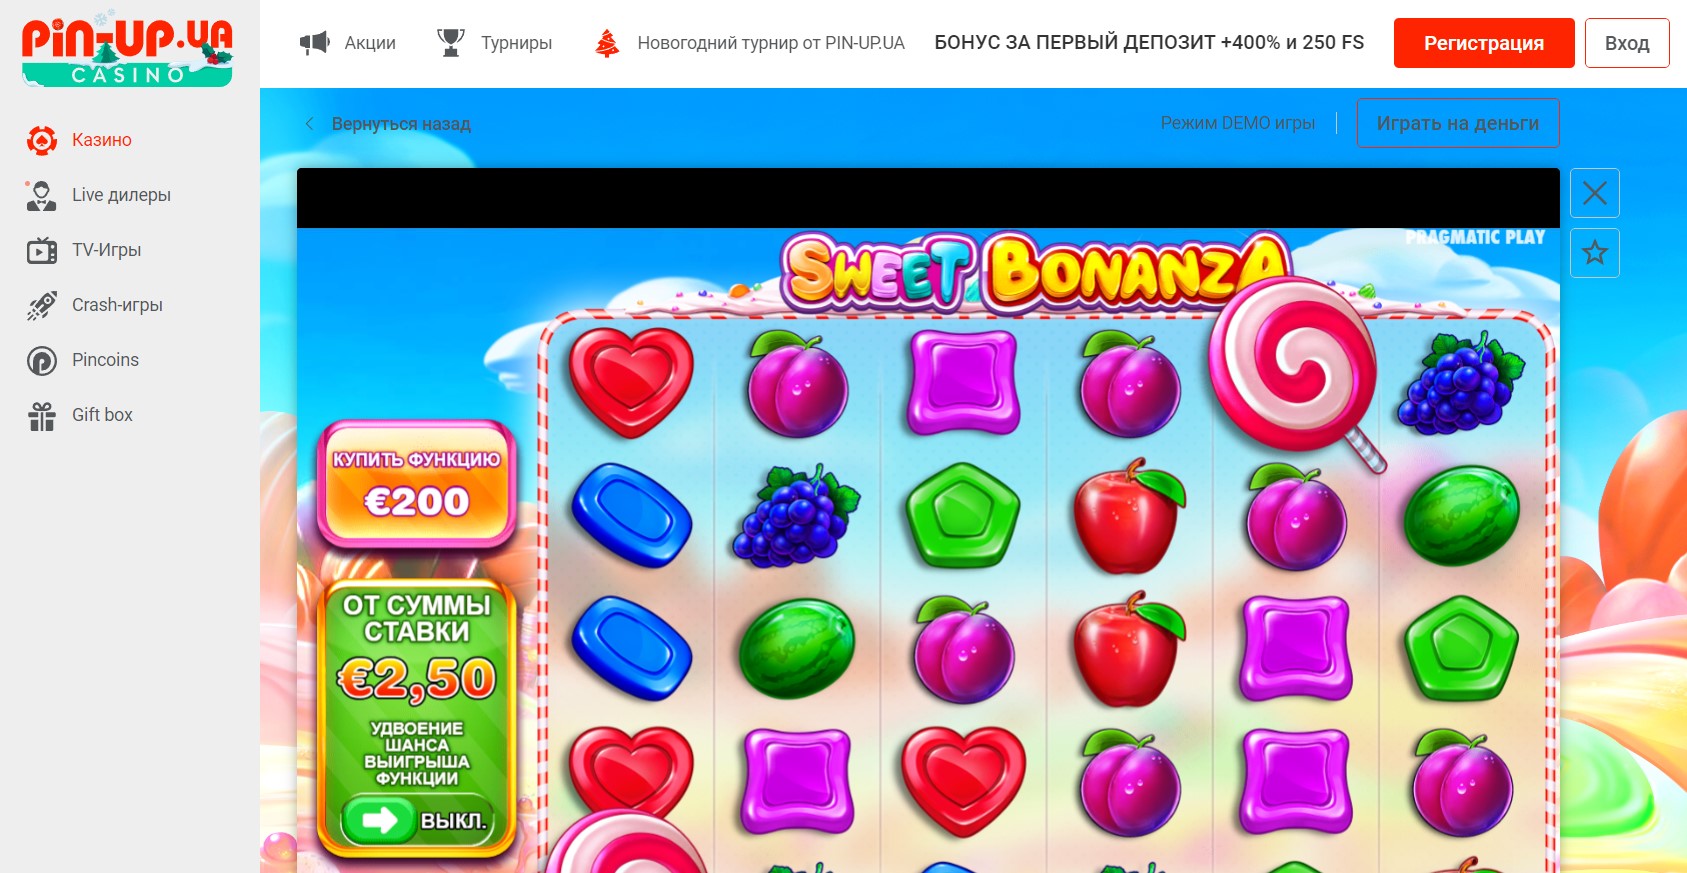 Sweet Bonanza - играть бесплатно в онлайн казино Пин Ап